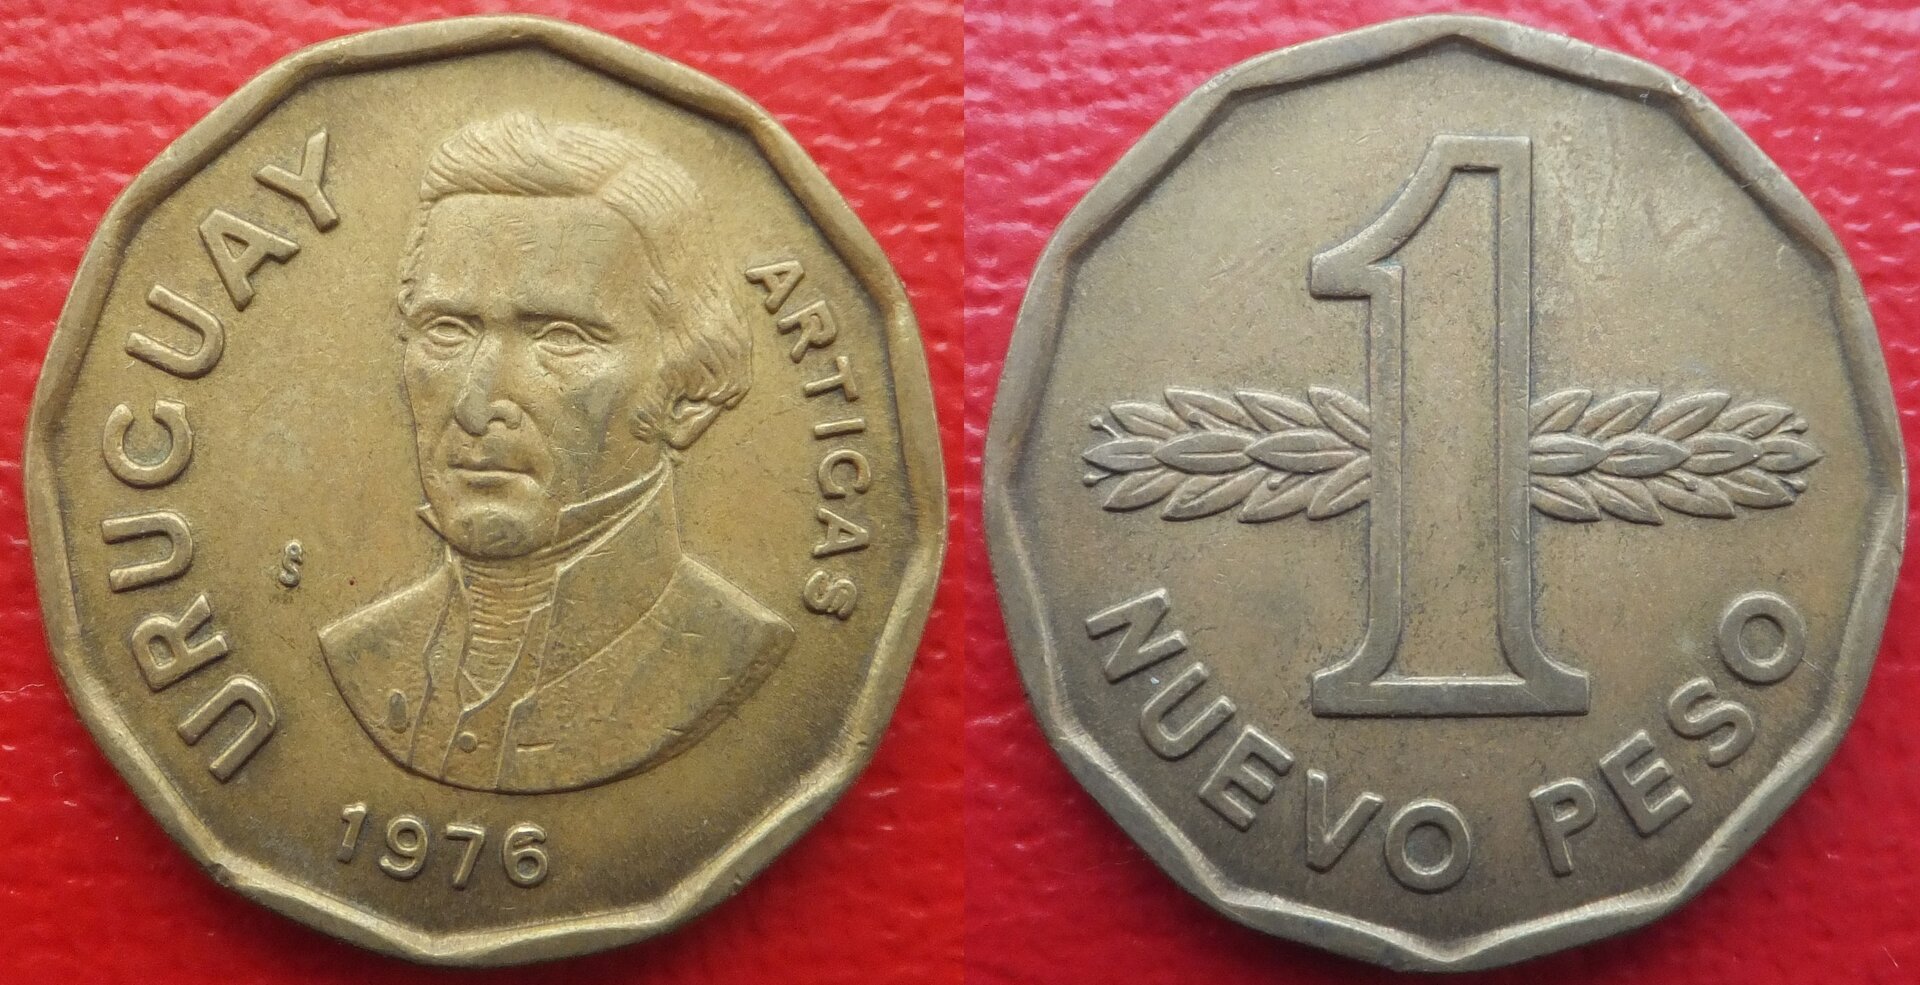 Uruguay 1 peso 1976 (3).jpg